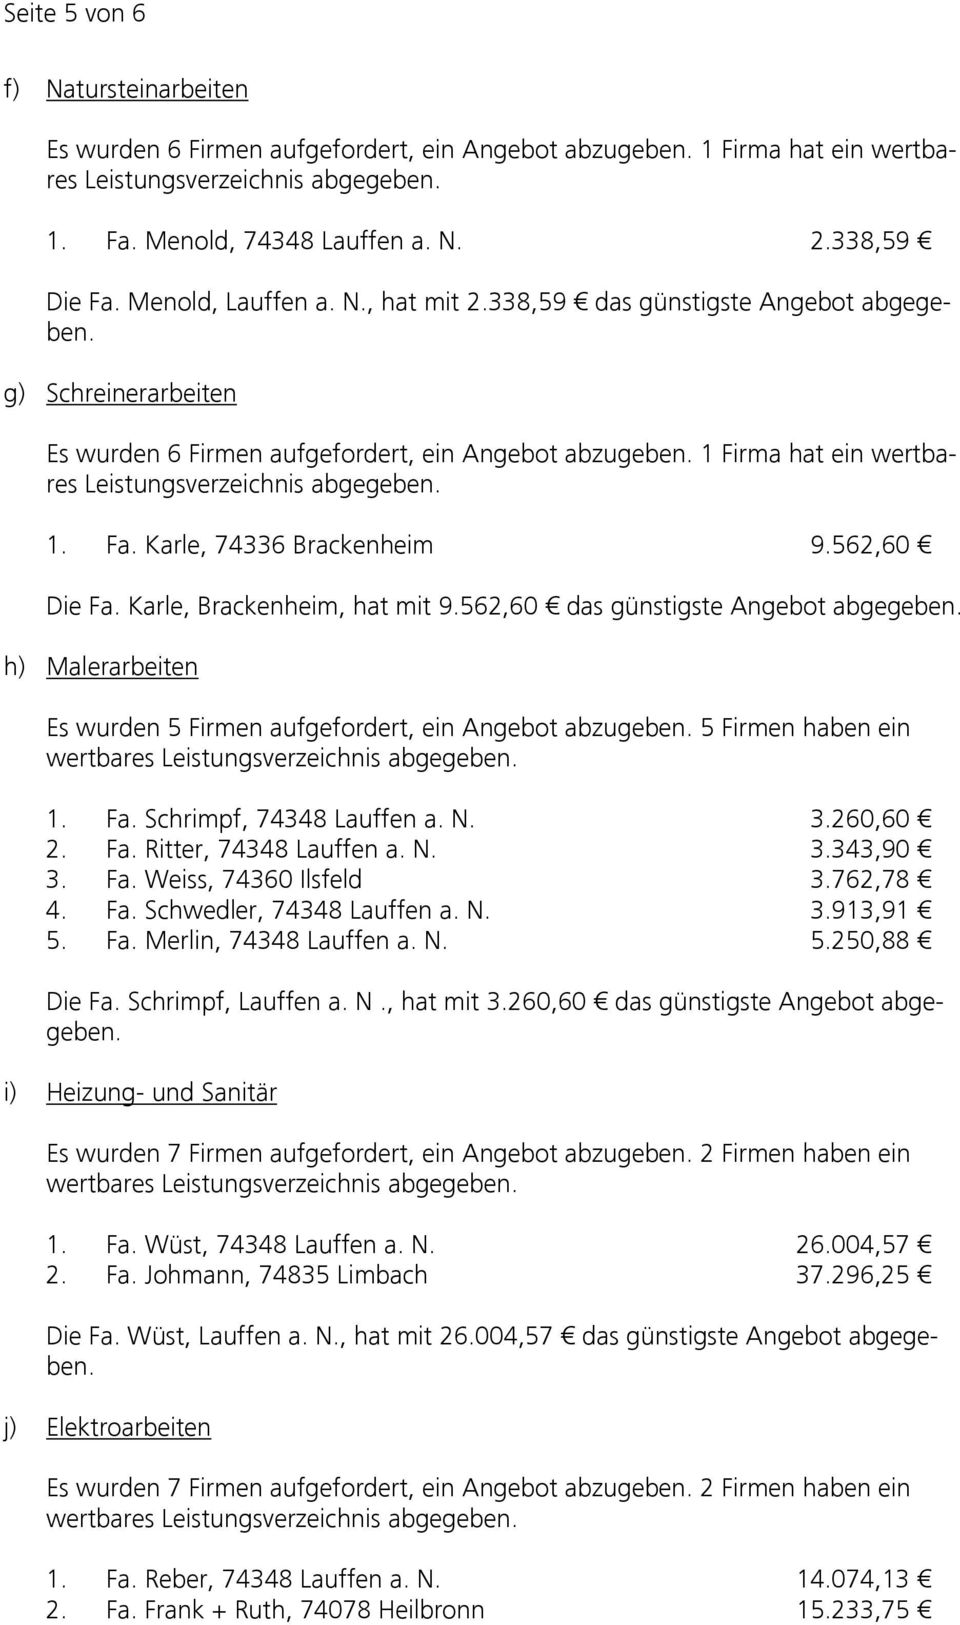 1 Firma hat ein wertbares Leistungsverzeichnis abgegeben. 1. Fa. Karle, 74336 Brackenheim 9.562,60 Die Fa. Karle, Brackenheim, hat mit 9.562,60 das günstigste Angebot abgegeben.